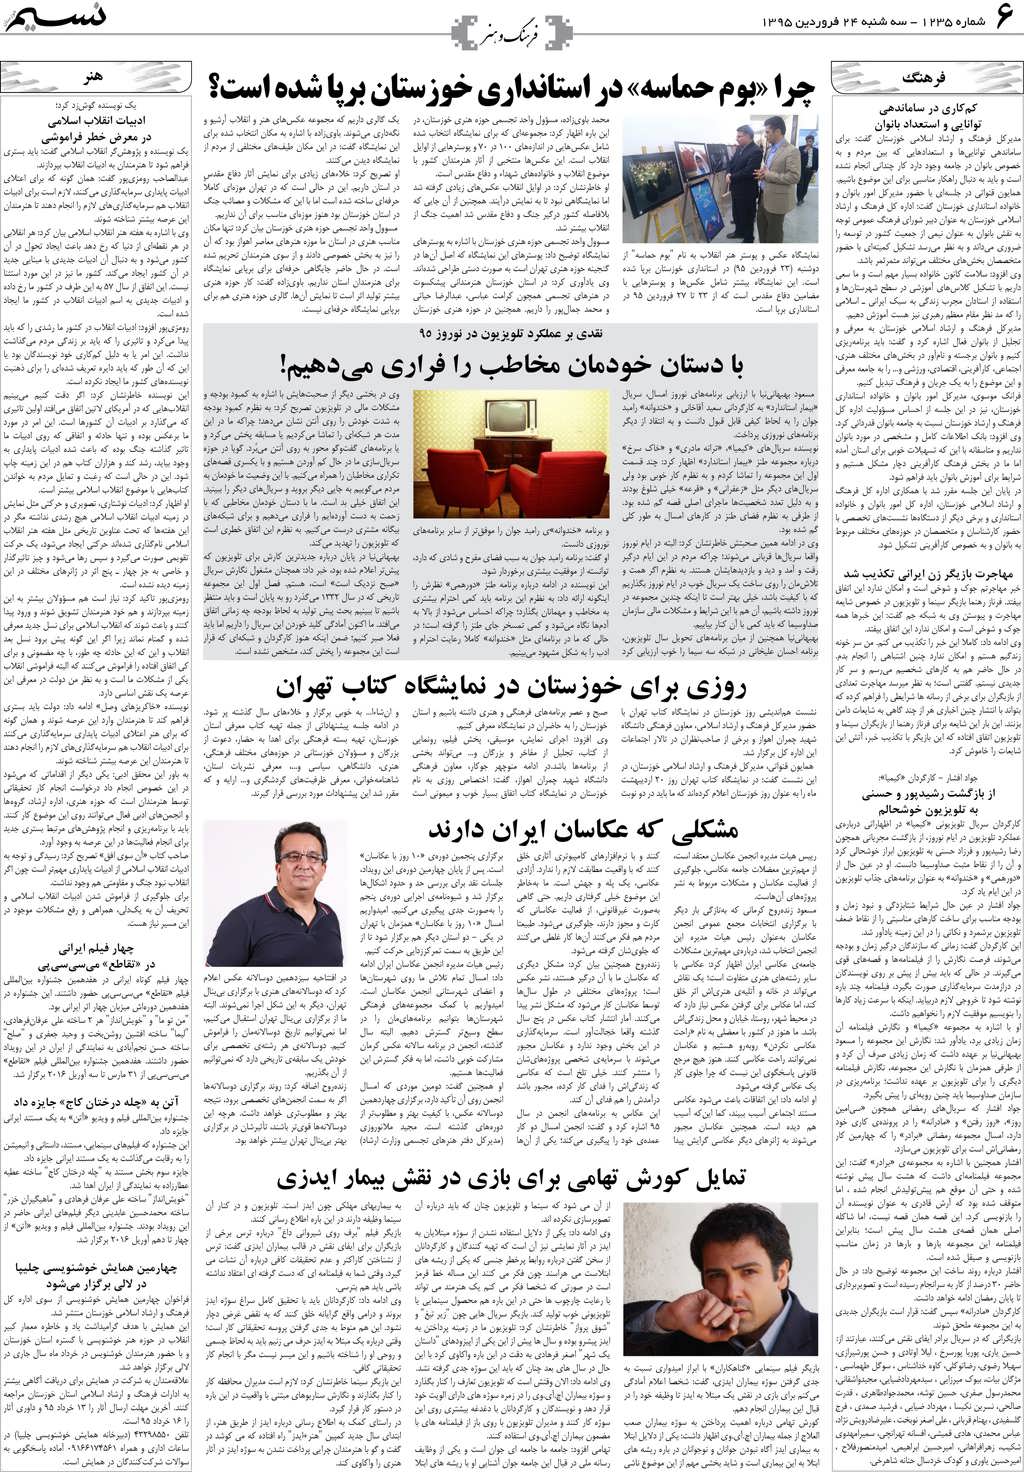 صفحه فرهنگ و هنر روزنامه نسیم شماره 1235